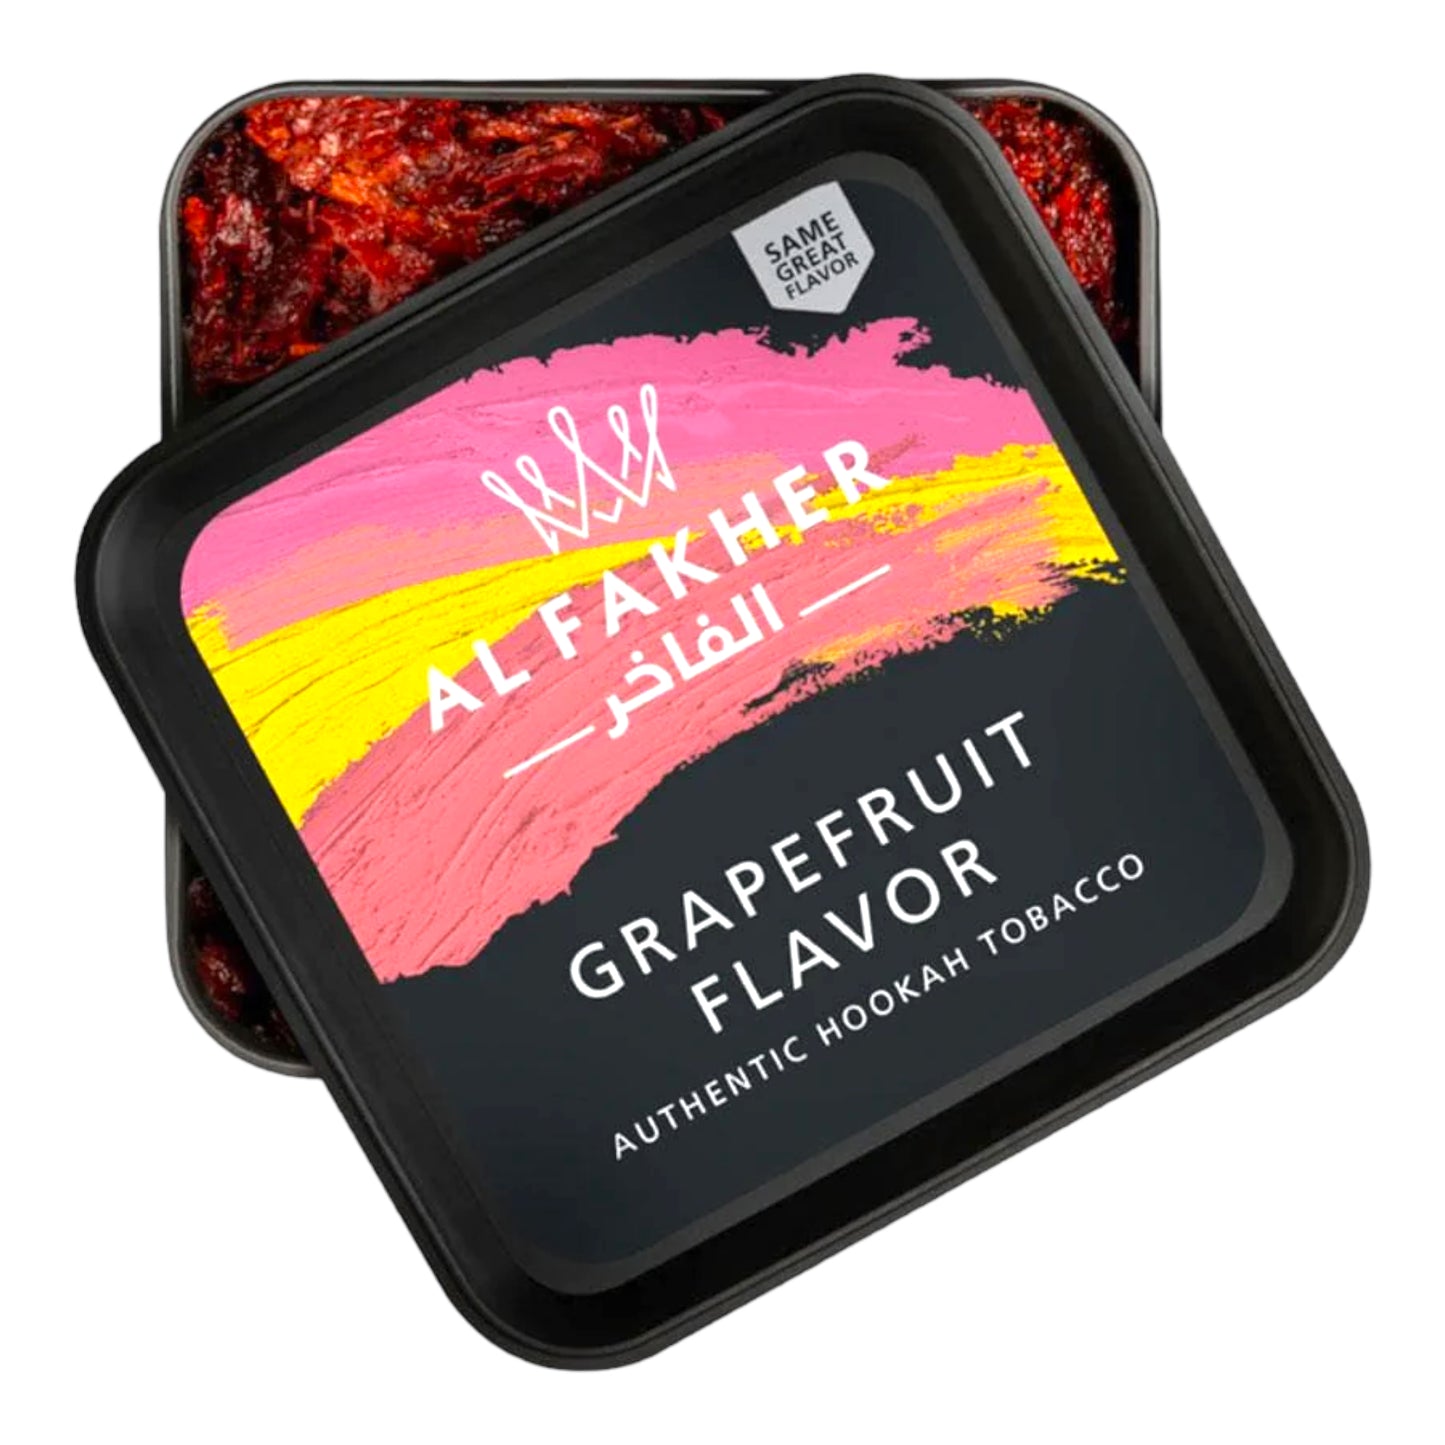 AL Fakher Grapefruit Flavor 250 GM الفاخر نكهة الجريب فروت